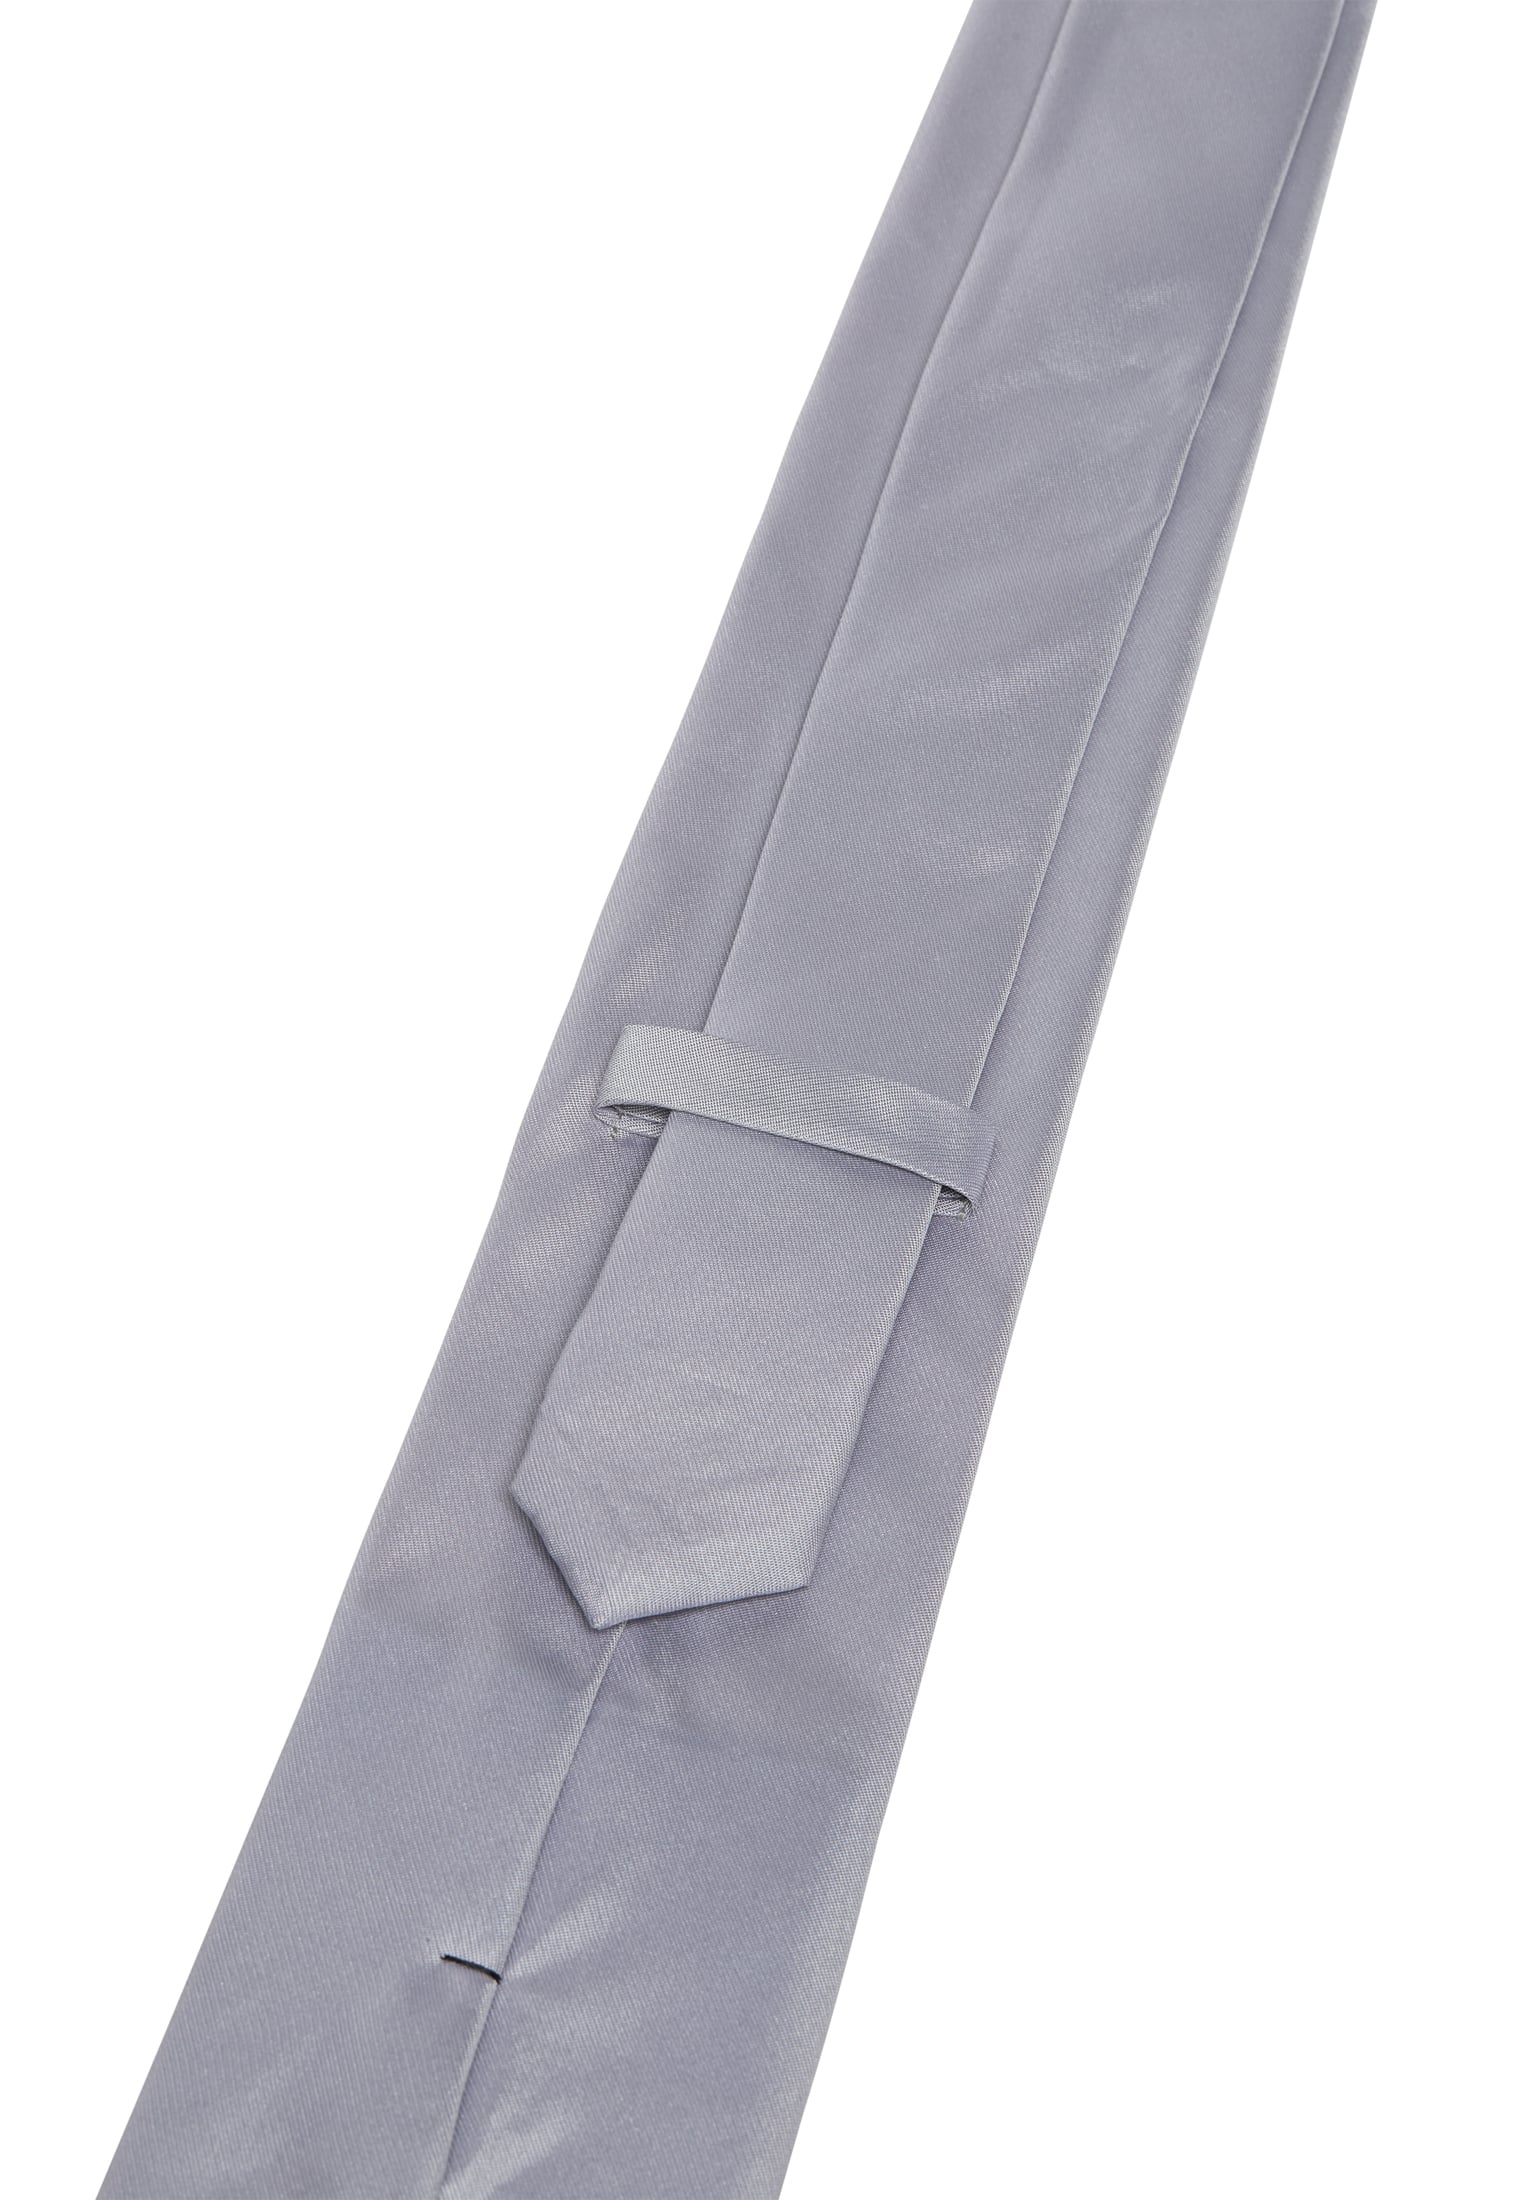 Krawatte in blau unifarben | blau | 142 | 1AC02086-01-41-142